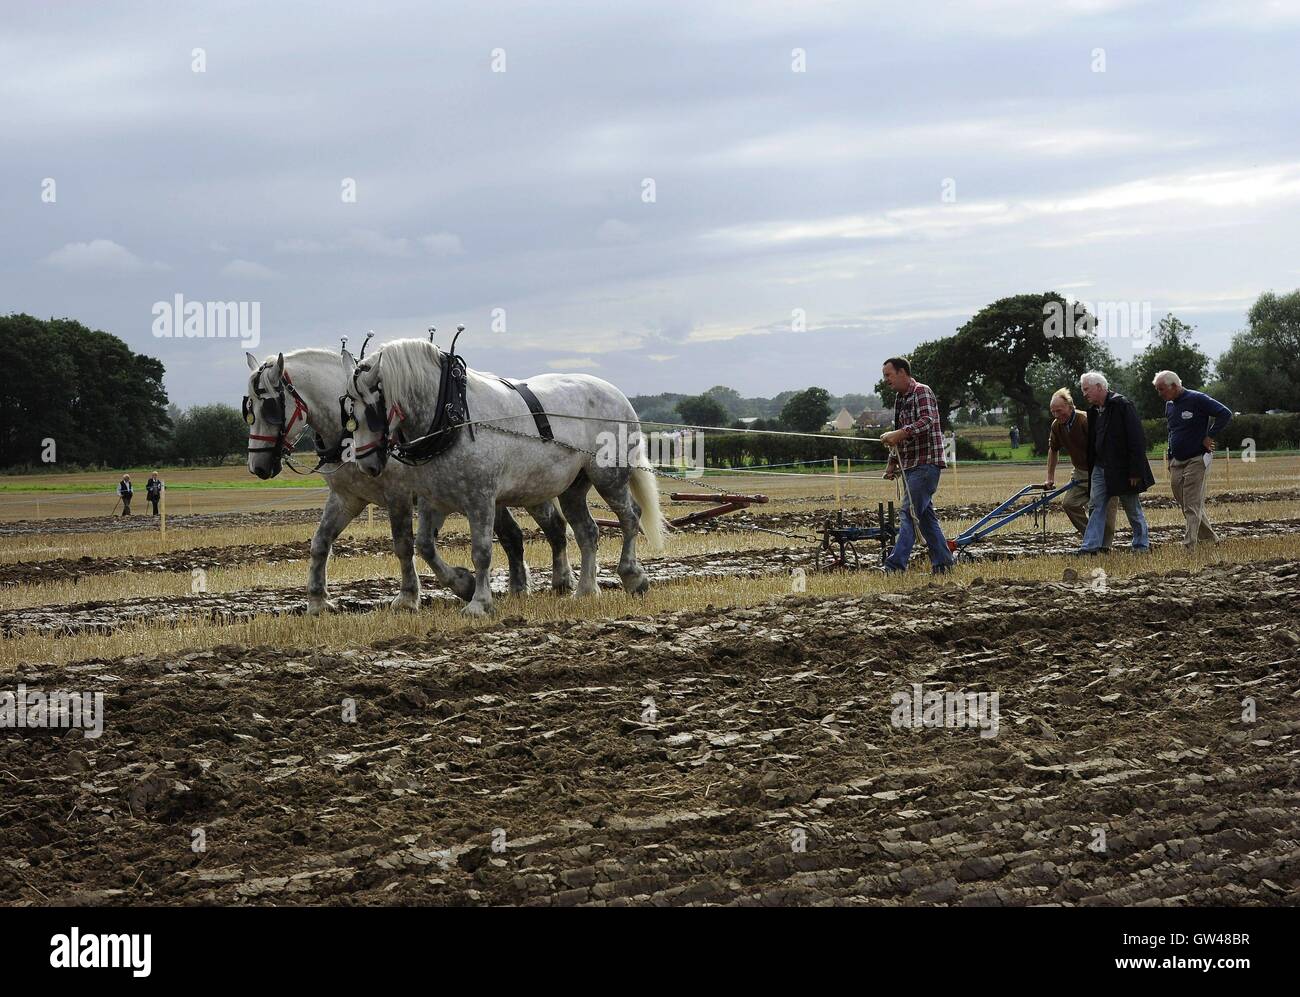 J J Delaney, repräsentiert von Cork, Irland in das Pferd Pflügen an den World-Pflügen-Wettbewerb am Crockey-Hügel in der Nähe von York, wo Vertreter aus über dreißig Ländern konkurrierten in verschiedenen Kategorien, die Weinlese und Pferdekutsche neben herkömmlichen Traktoren enthalten. Stockfoto